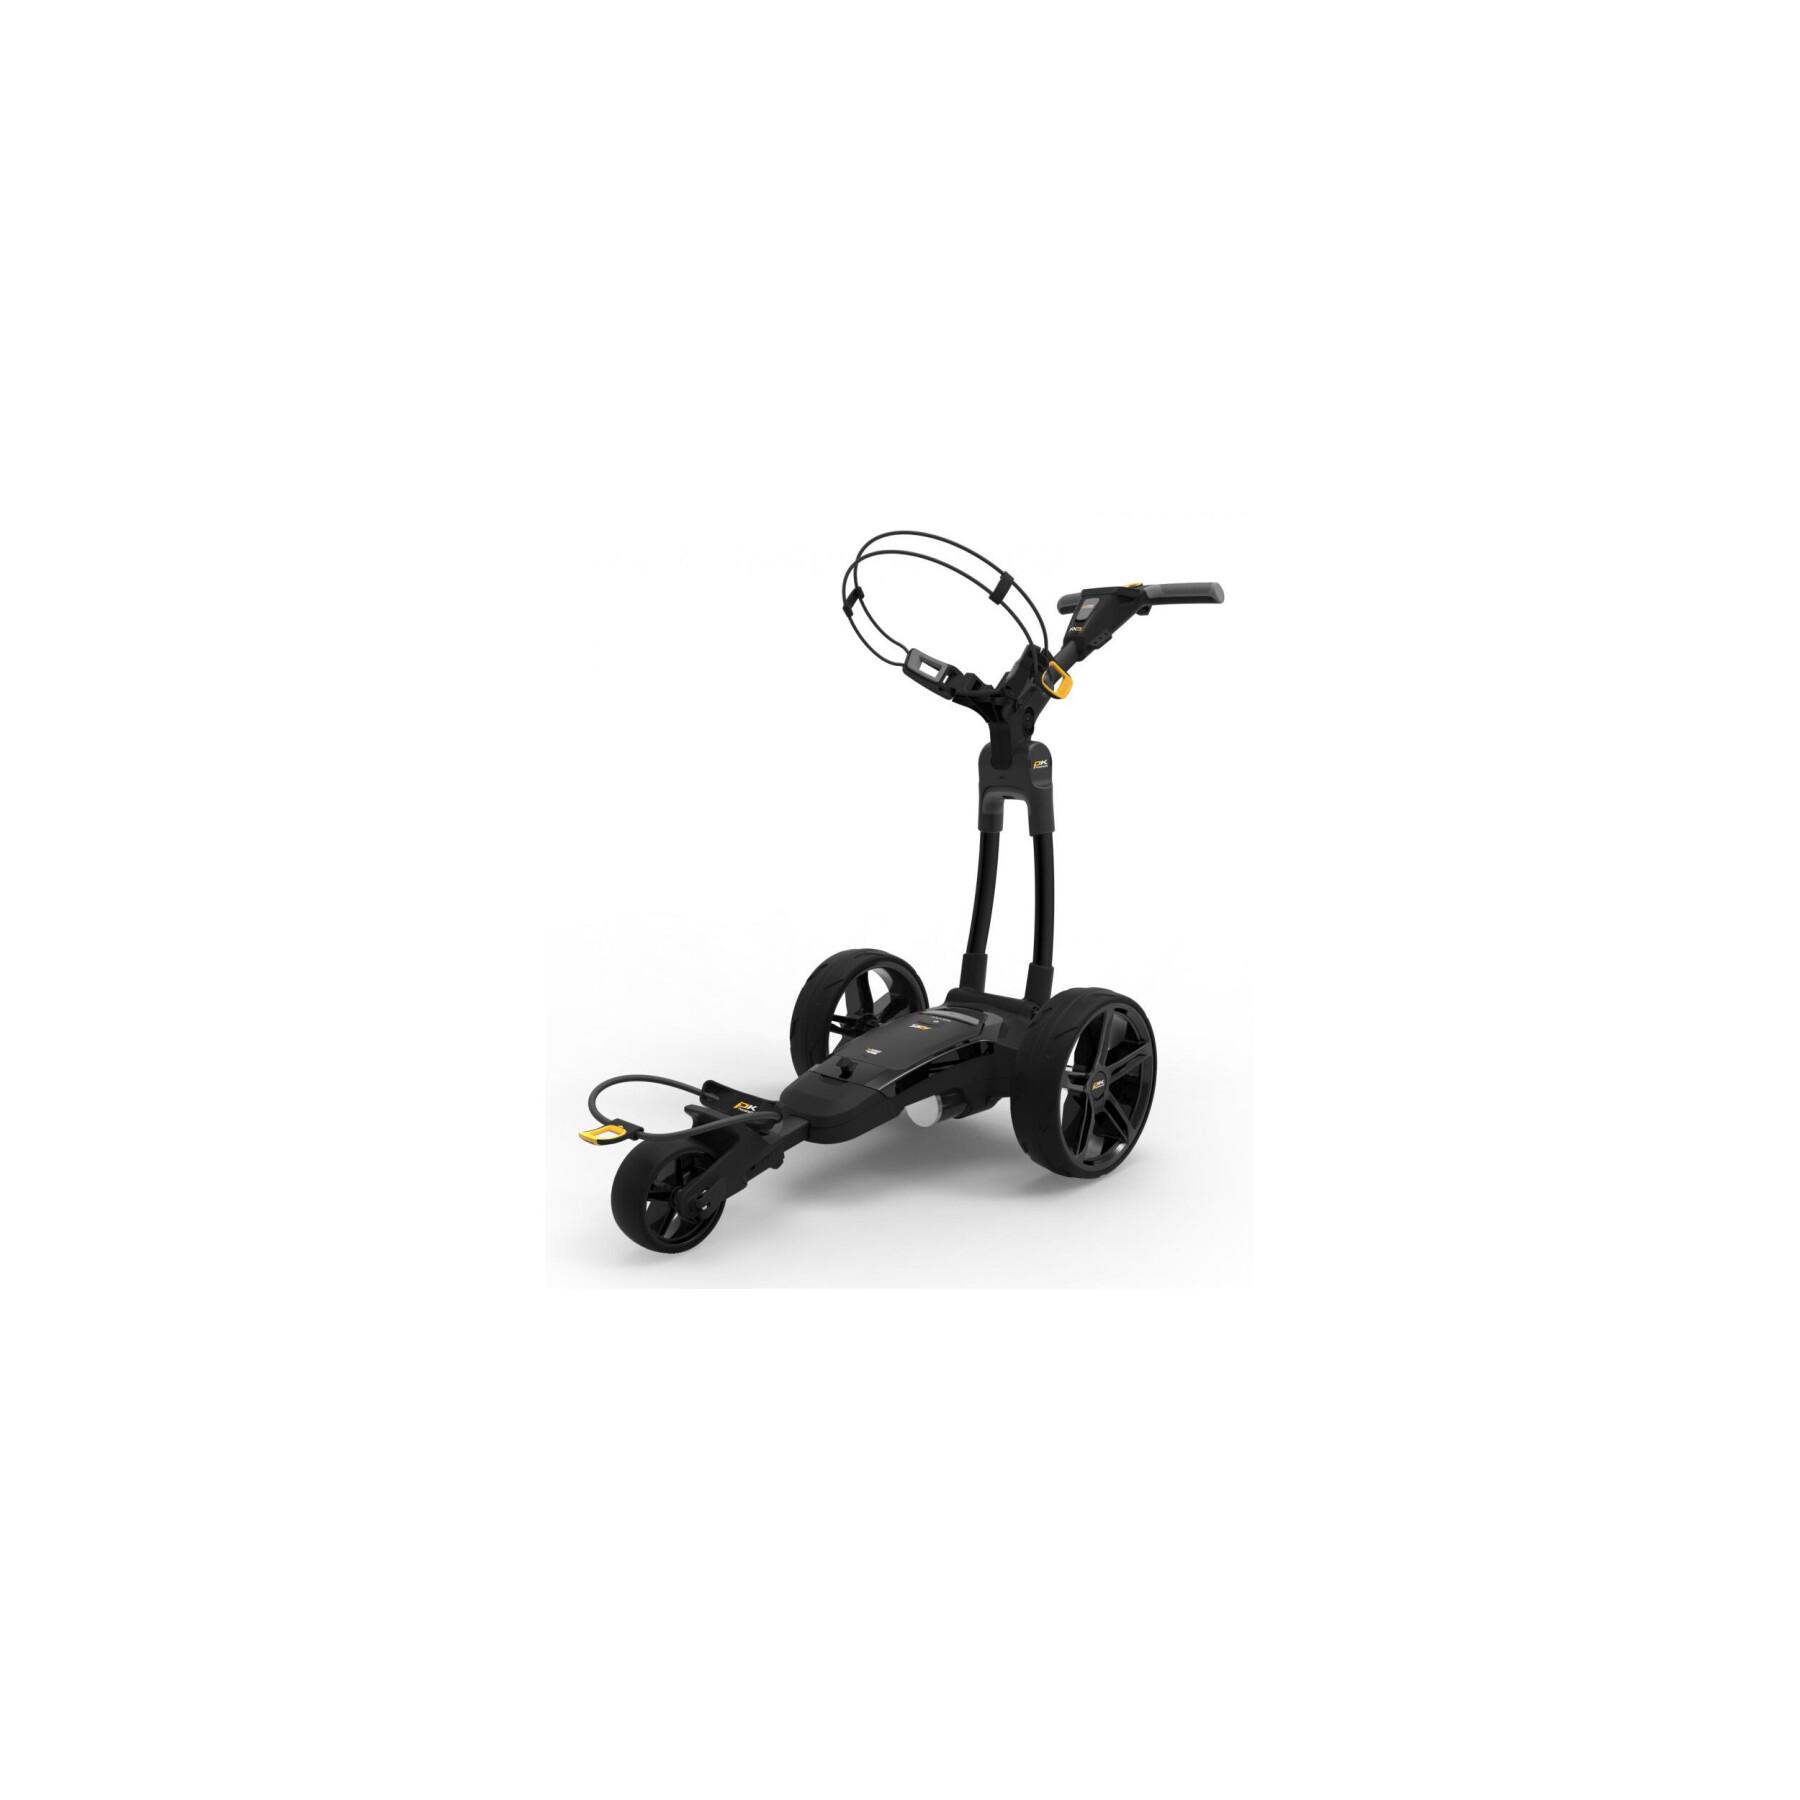 Elektryczny wózek widłowy Powakaddy FX3 LITH STD